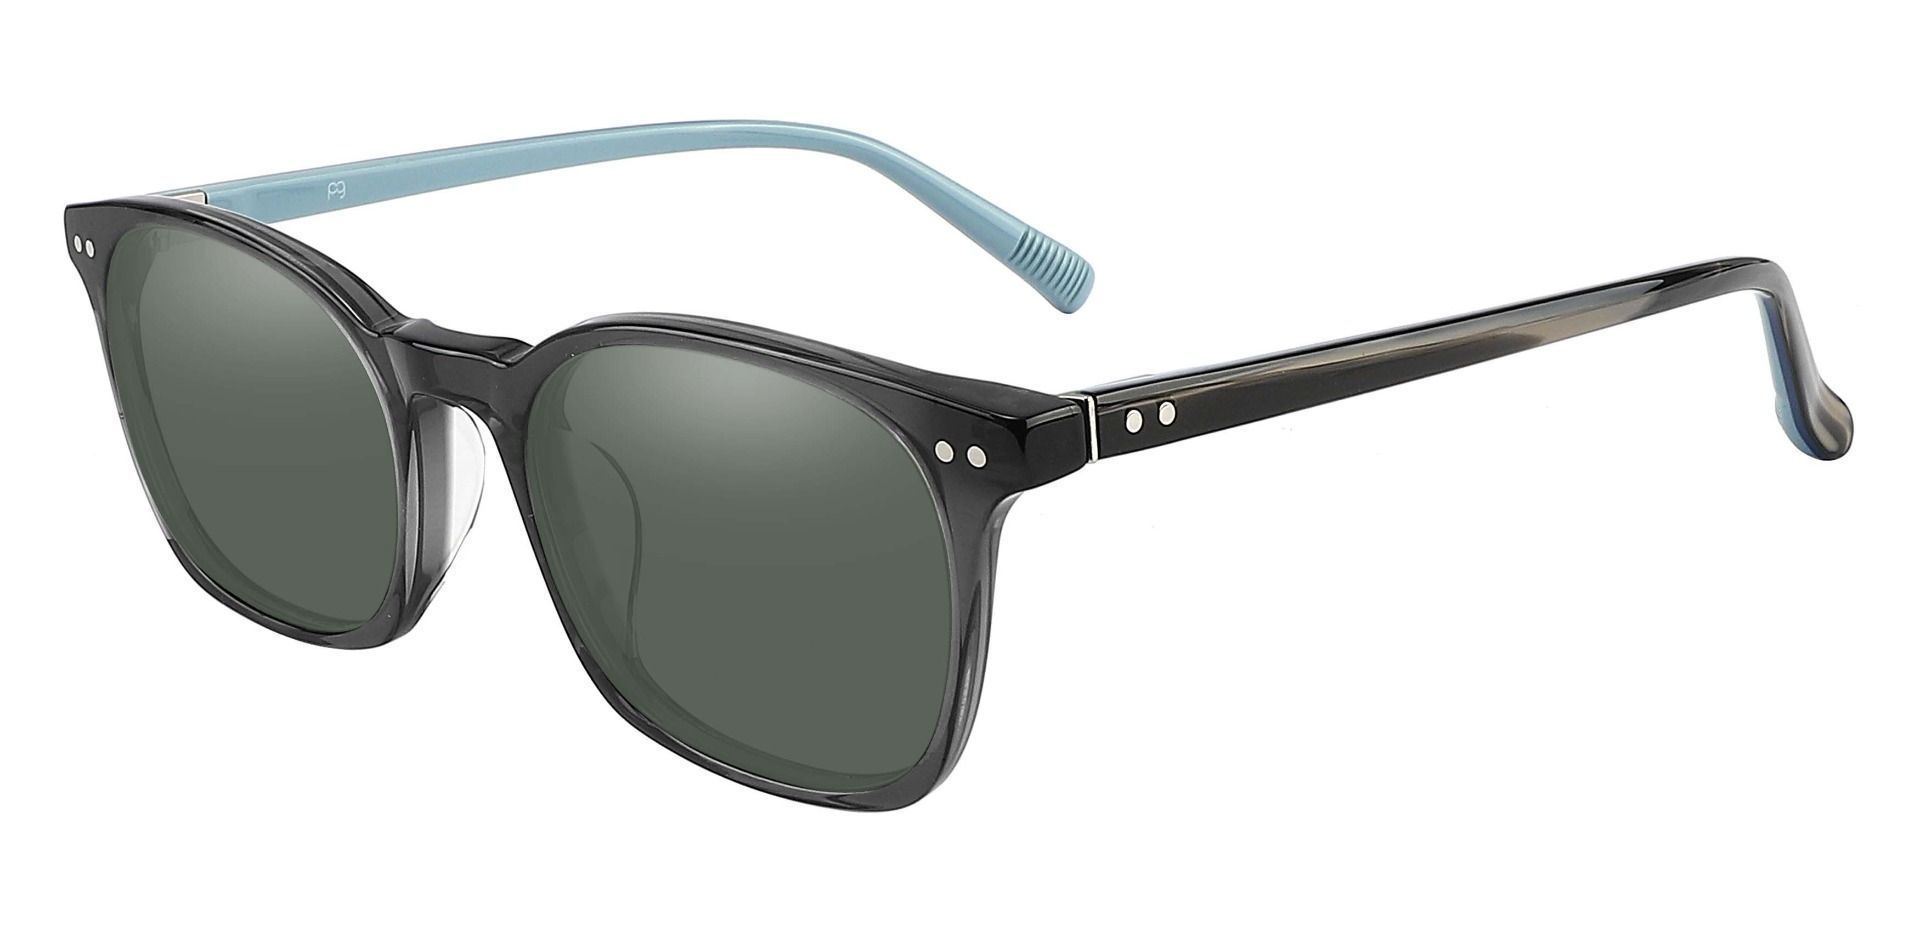 Alonzo Square Prescription Sunglasses - Gray Frame With Green Lenses